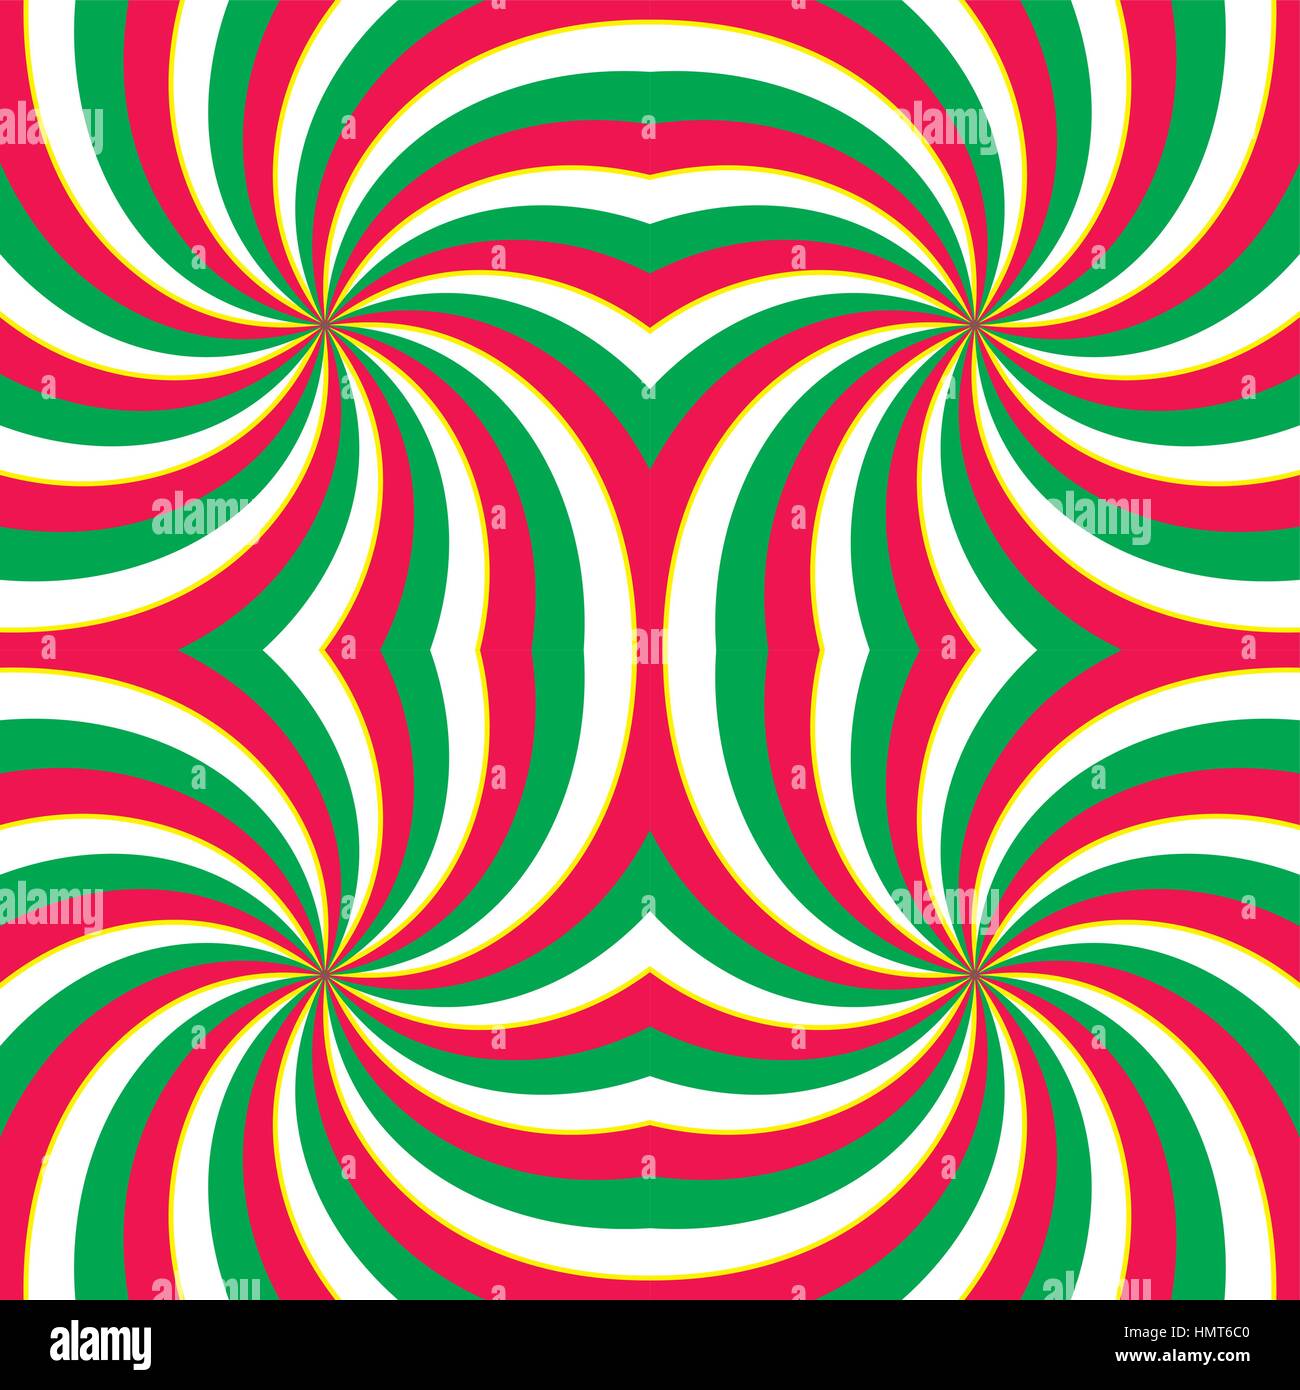 Hypnotische wirbelnden radial Wirbel Hintergrund. Roten, grünen und weißen Streifen wirbeln in Quadrat. Vektor-Illustration im EPS8-Format. Stock Vektor